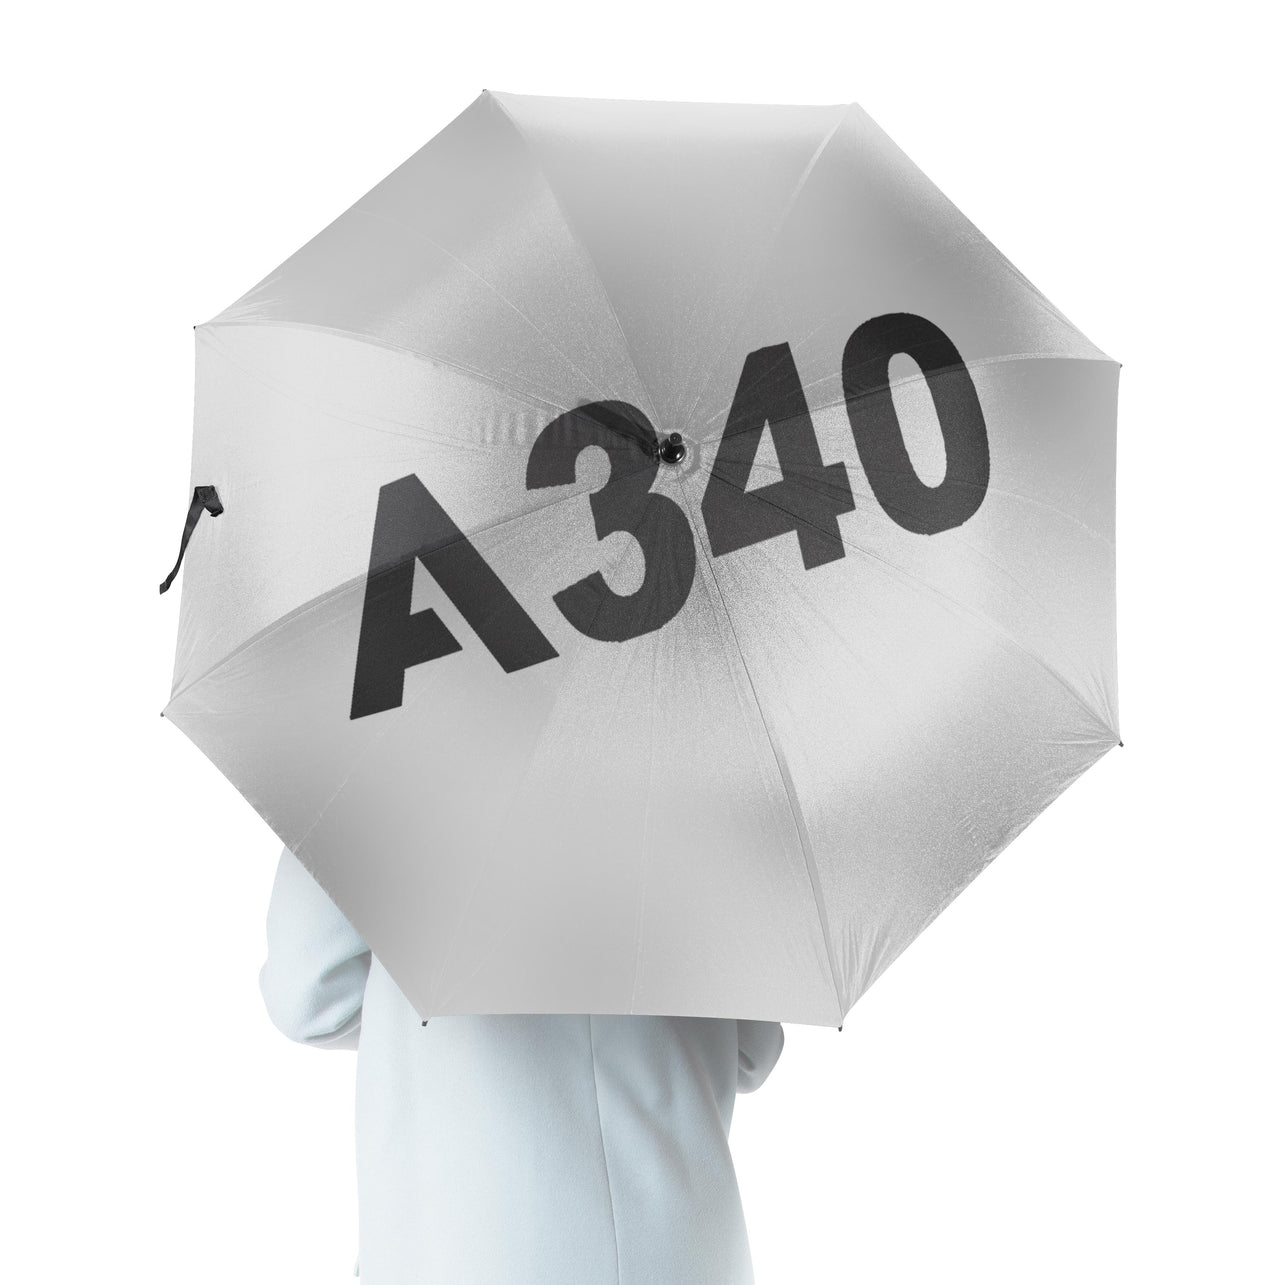 A340 Flat Text Designed Umbrella